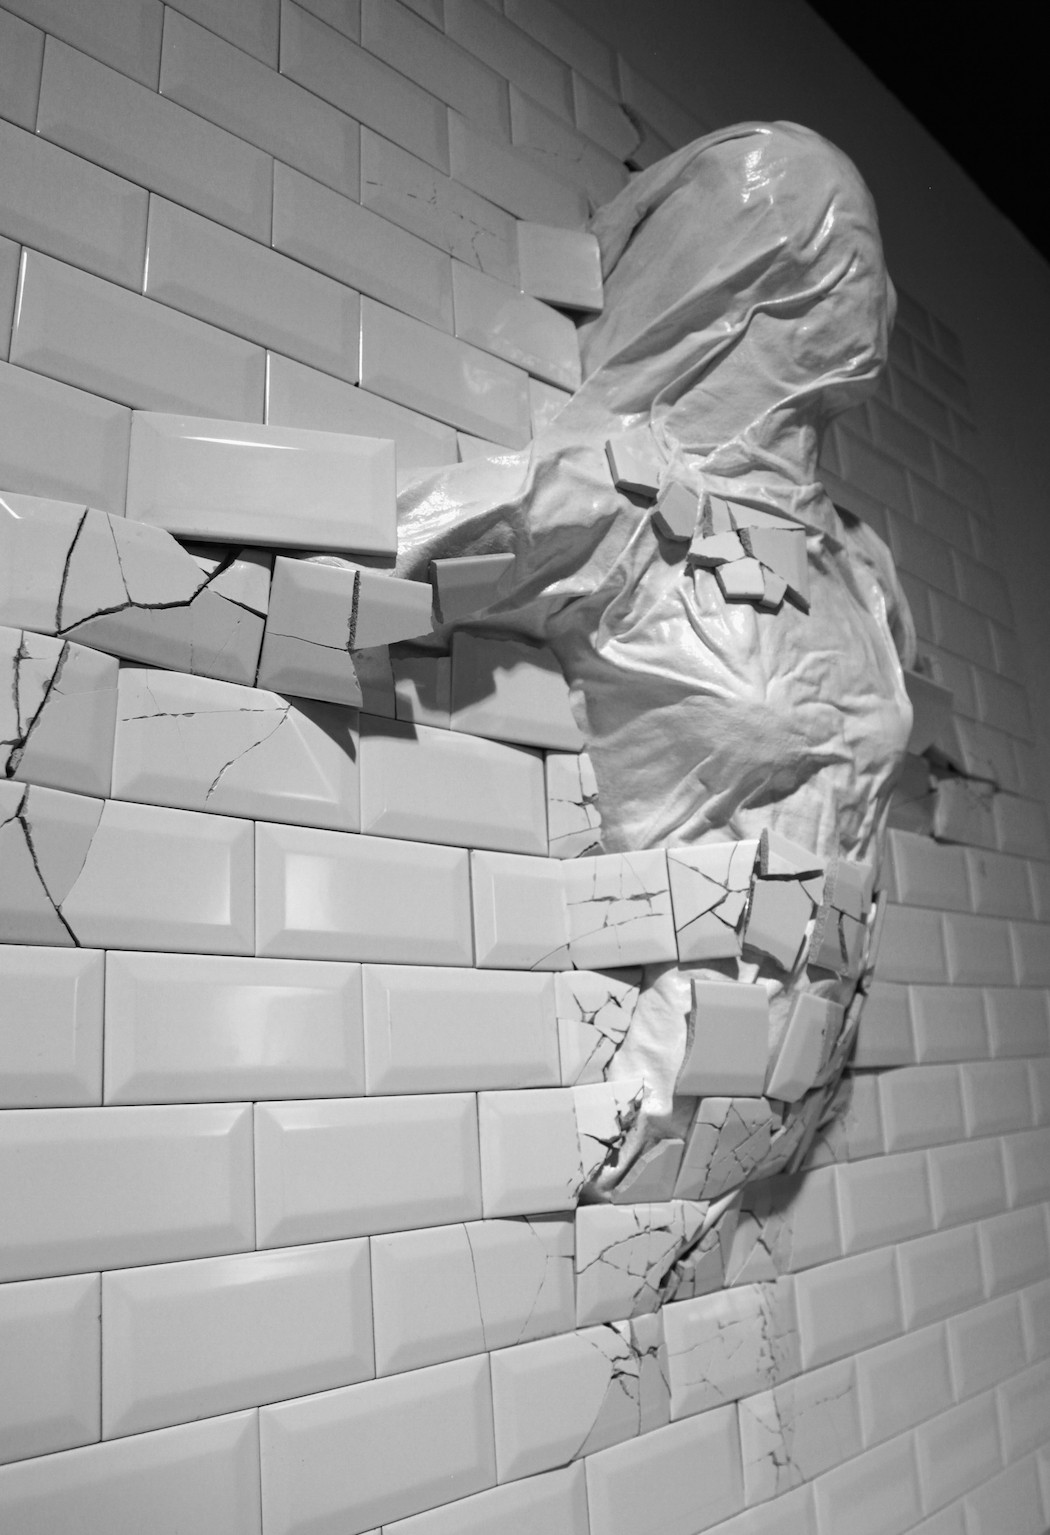 Artistic Broken Items by Graziano Locatelli-2